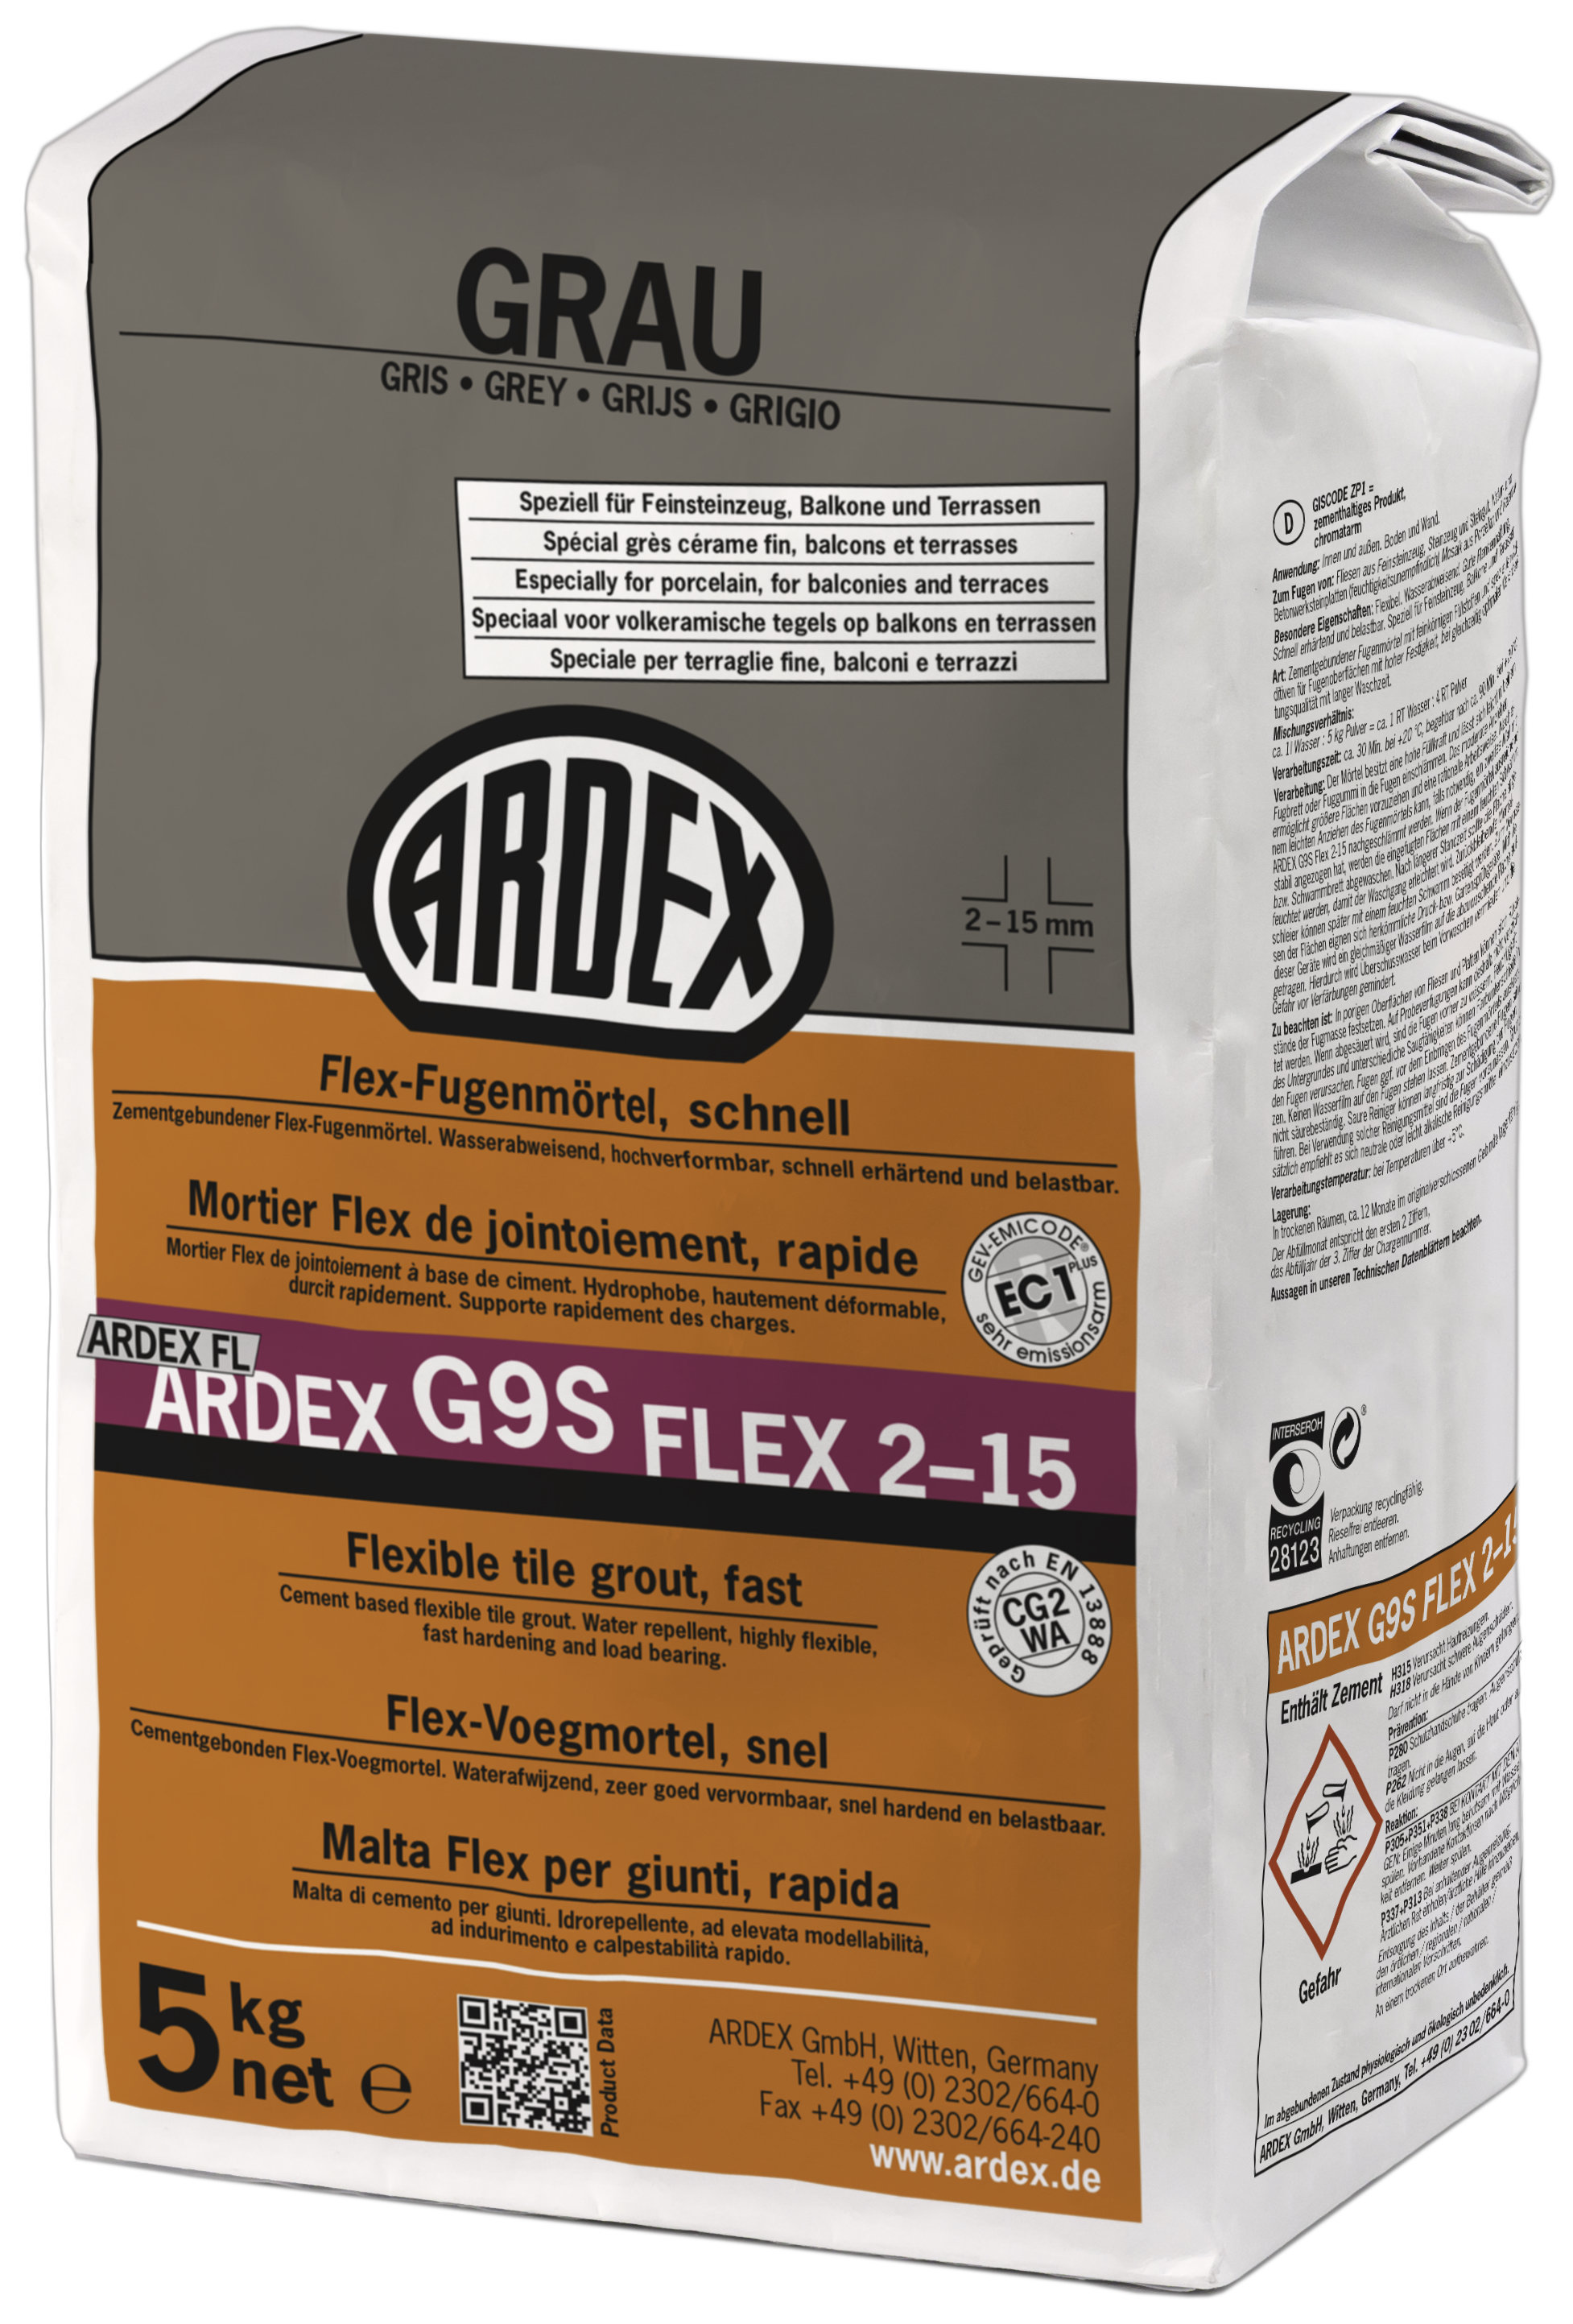 Ardex Flex Fugenmörtel G9S